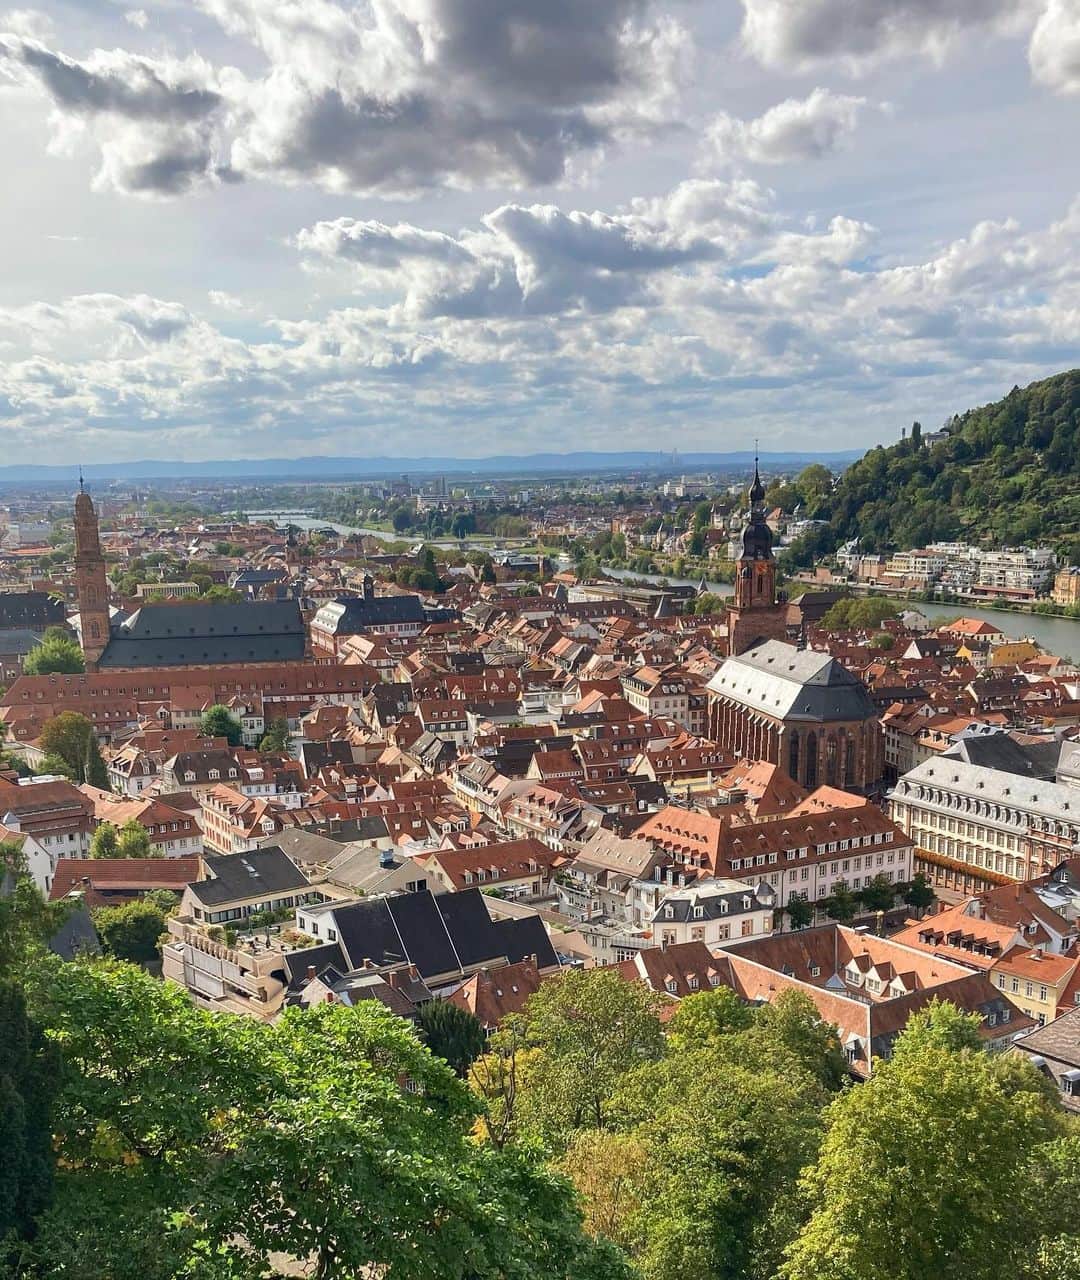 YUINAのインスタグラム：「. Heidelberg ハイデルベルク城からの眺め♪♪♪ ⁡ 赤い屋根が宝石箱みたいにキラキラ〜✨ ⁡ ドイツ三大名城の一つなんだけど まぁあちこち戦争で壊れて廃墟城！笑 その都度、その時代の建築様式で復元してるからゴシック様式、ロマネスク様式、ルネサンス様式とまぜこぜセンスの集大成🤭 ⁡ 今のドイツじゃほぼ見ない ライオン像がやけに多くて 夜行ったら完全にホラーwww ⁡ 修復できないまま今の姿になった理由は 度重なる戦争被害 ⁡ 長らくヨーロッパの権力者はバチカンだったから、カトリック要素強めの城に作り替えようとしたけど、カトリックは豪華絢爛だからお金がかかる笑 ⁡ 宗教改革のルターもいて、市民の反感も買い そのうちに、ハイデルベルク辞めて マインツに新しく遷都しよか！となり ⁡ そっちに城を建てるための石や鉄や木材が なんと壊れたハイデルベルク城から持って行かれた笑 ⁡ 何度も修復の話はでるけど その頃にはハイデルベルクの住人たちが城から石や装飾まで取って自分たちの家造りに使っちゃったからもう資源なし！www ⁡ とどめに２度の稲妻で大火事になり これは神のメッセージだと時の皇帝が判断して 修復諦めて300年たったなう😂 ⁡ お城や宮殿ってまず敵からの攻防に 皇帝の栄華誇示や 自然さえも従わせるメッセージのこもった庭園とか 支配エネルギーが強烈すぎて、おぇってなるけど 街の景色は本当に最高すぎた✨ ⁡ 当時の住人は毎日お城を見上げてるし、行ったことないからお城の暮らしに憧れとかあったらしいけど、なんか現代のメディア操作と似てる笑 ⁡ 私の気づきとしては お城より下界のほうが120%vibesいい😂❤️  フランクフルトから行くとカフェでもなんでも 安く感じたよ✨  #ハイデルベルク城 #ドイツ生活 #フランクフルト #フランクフルト生活  #heidelbergcastle  #Heidelberg #altstadt #deutschland  #landscape」